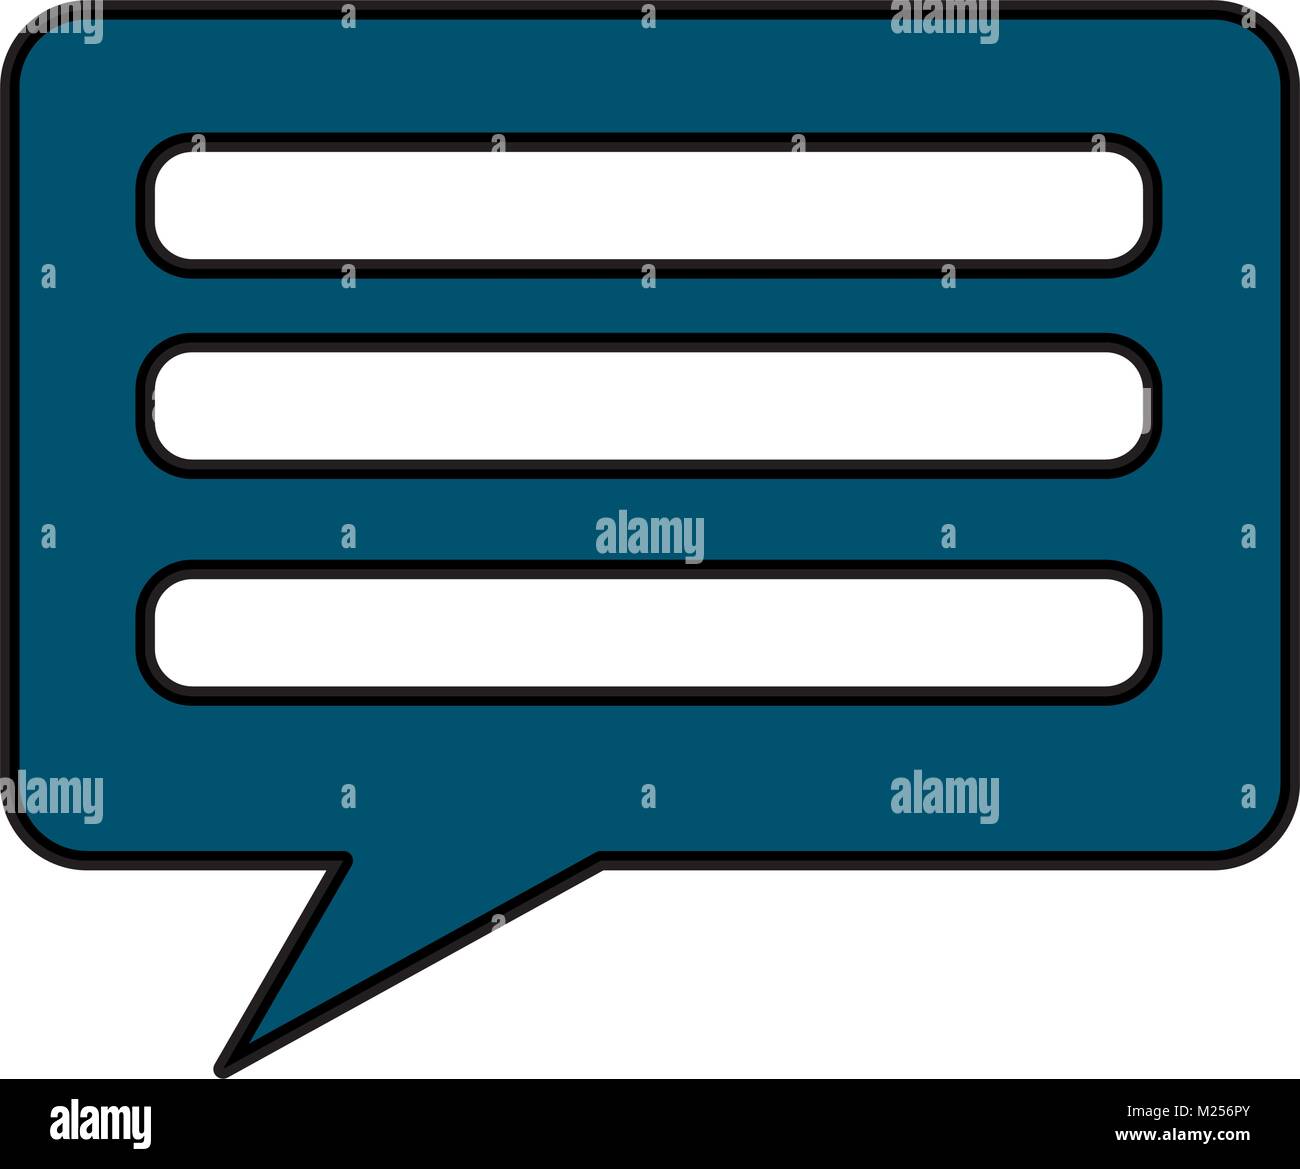 Bulle chat sms communication Illustration de Vecteur